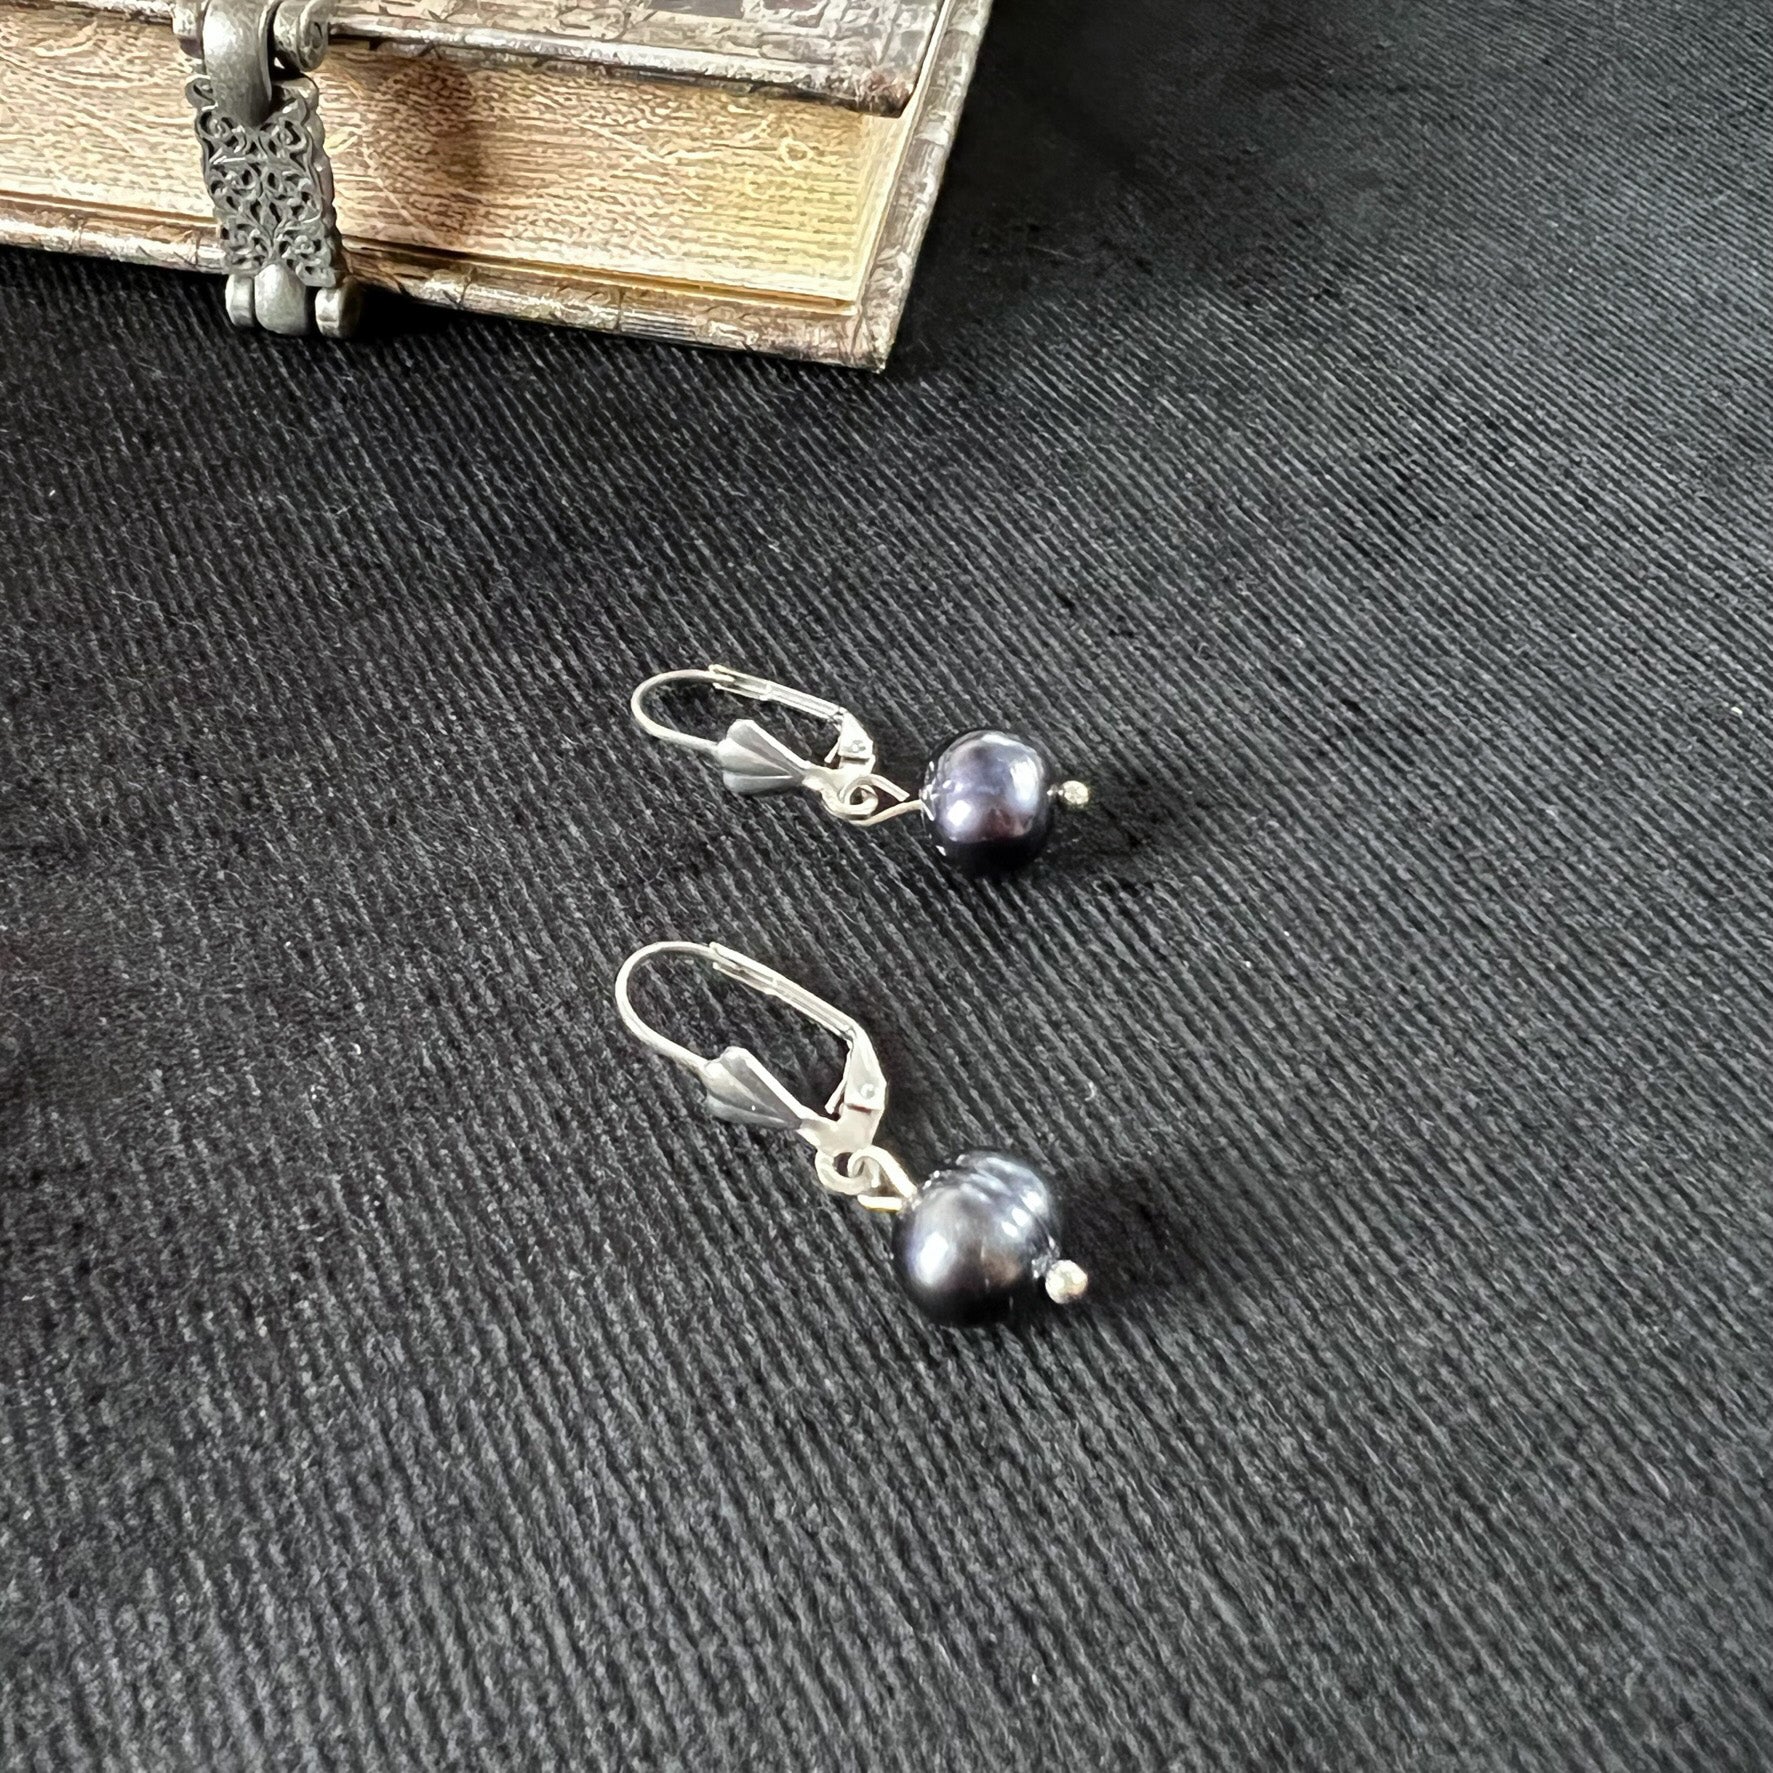 Victorian baroque black pearl earrings elegant earrings stainless steel